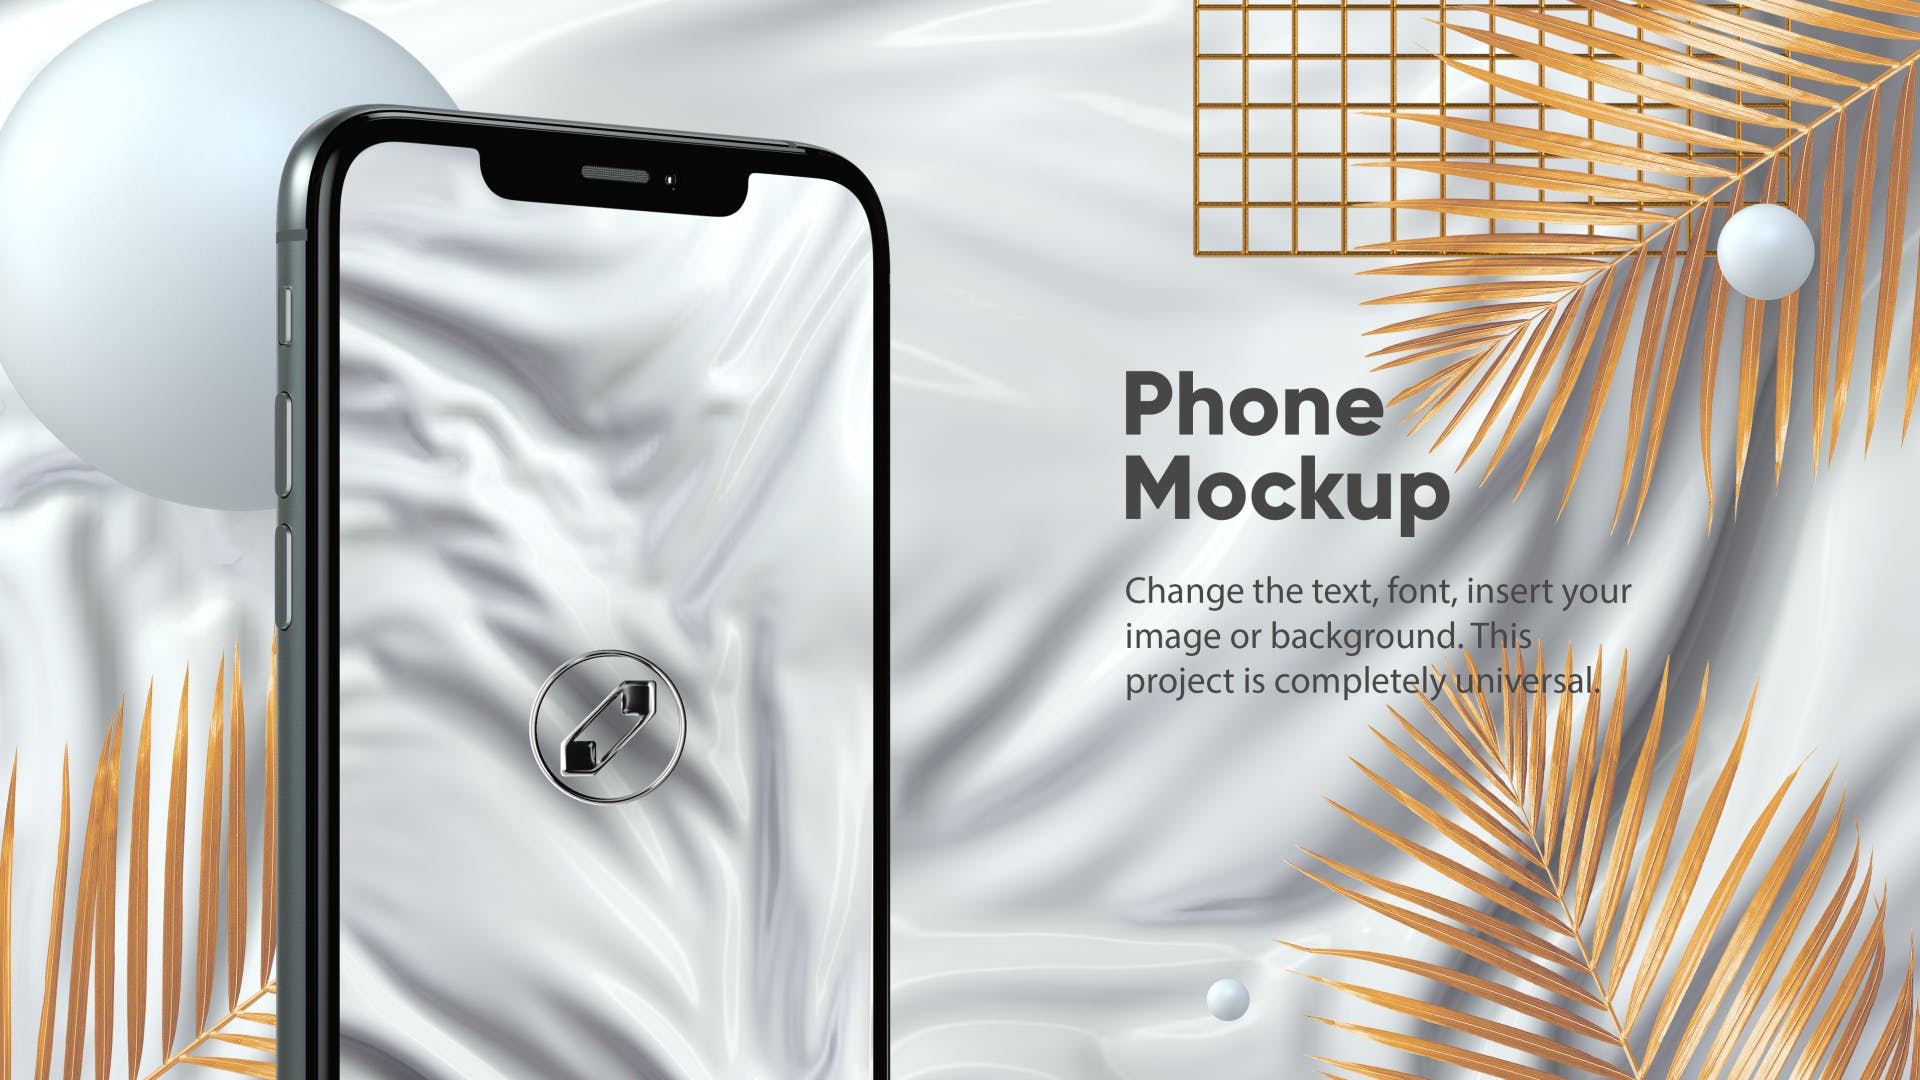 优雅时尚风格3D立体风格iPhone手机屏幕预览素材库精选样机 10 Light Phone Mockups插图(7)